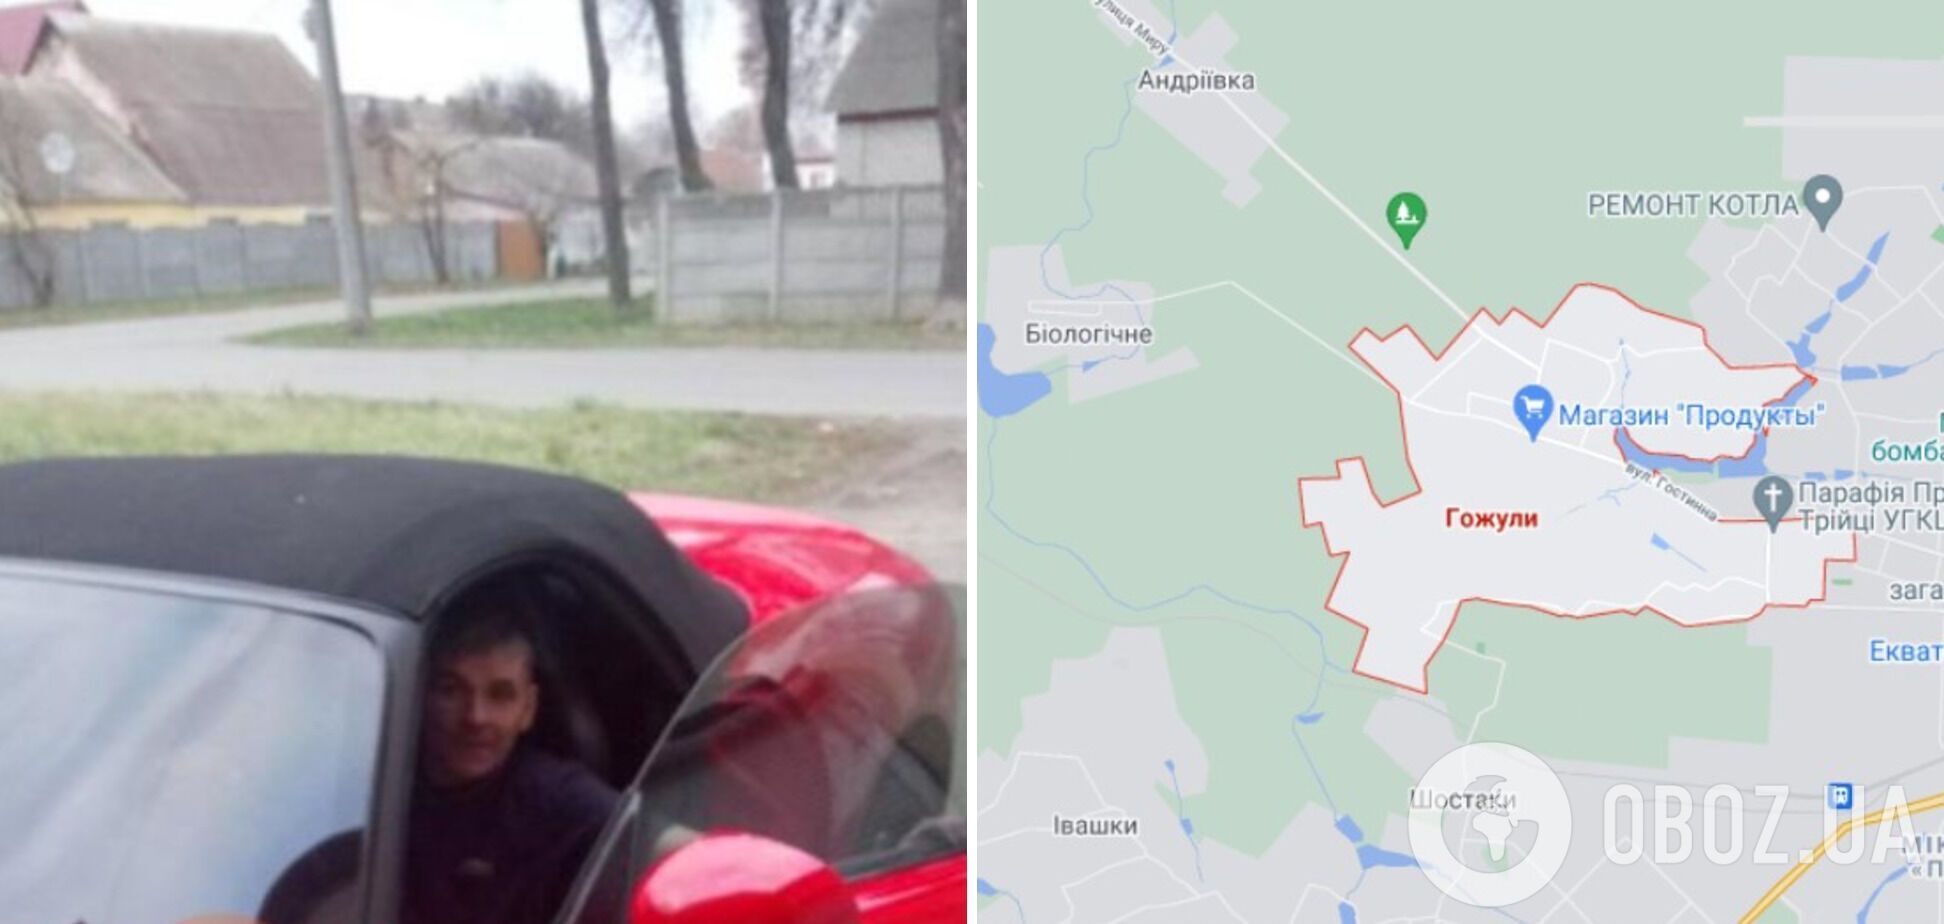 Миколу Косса знайшли мертвим 16 листопада у селі Гожули на Полтавщині